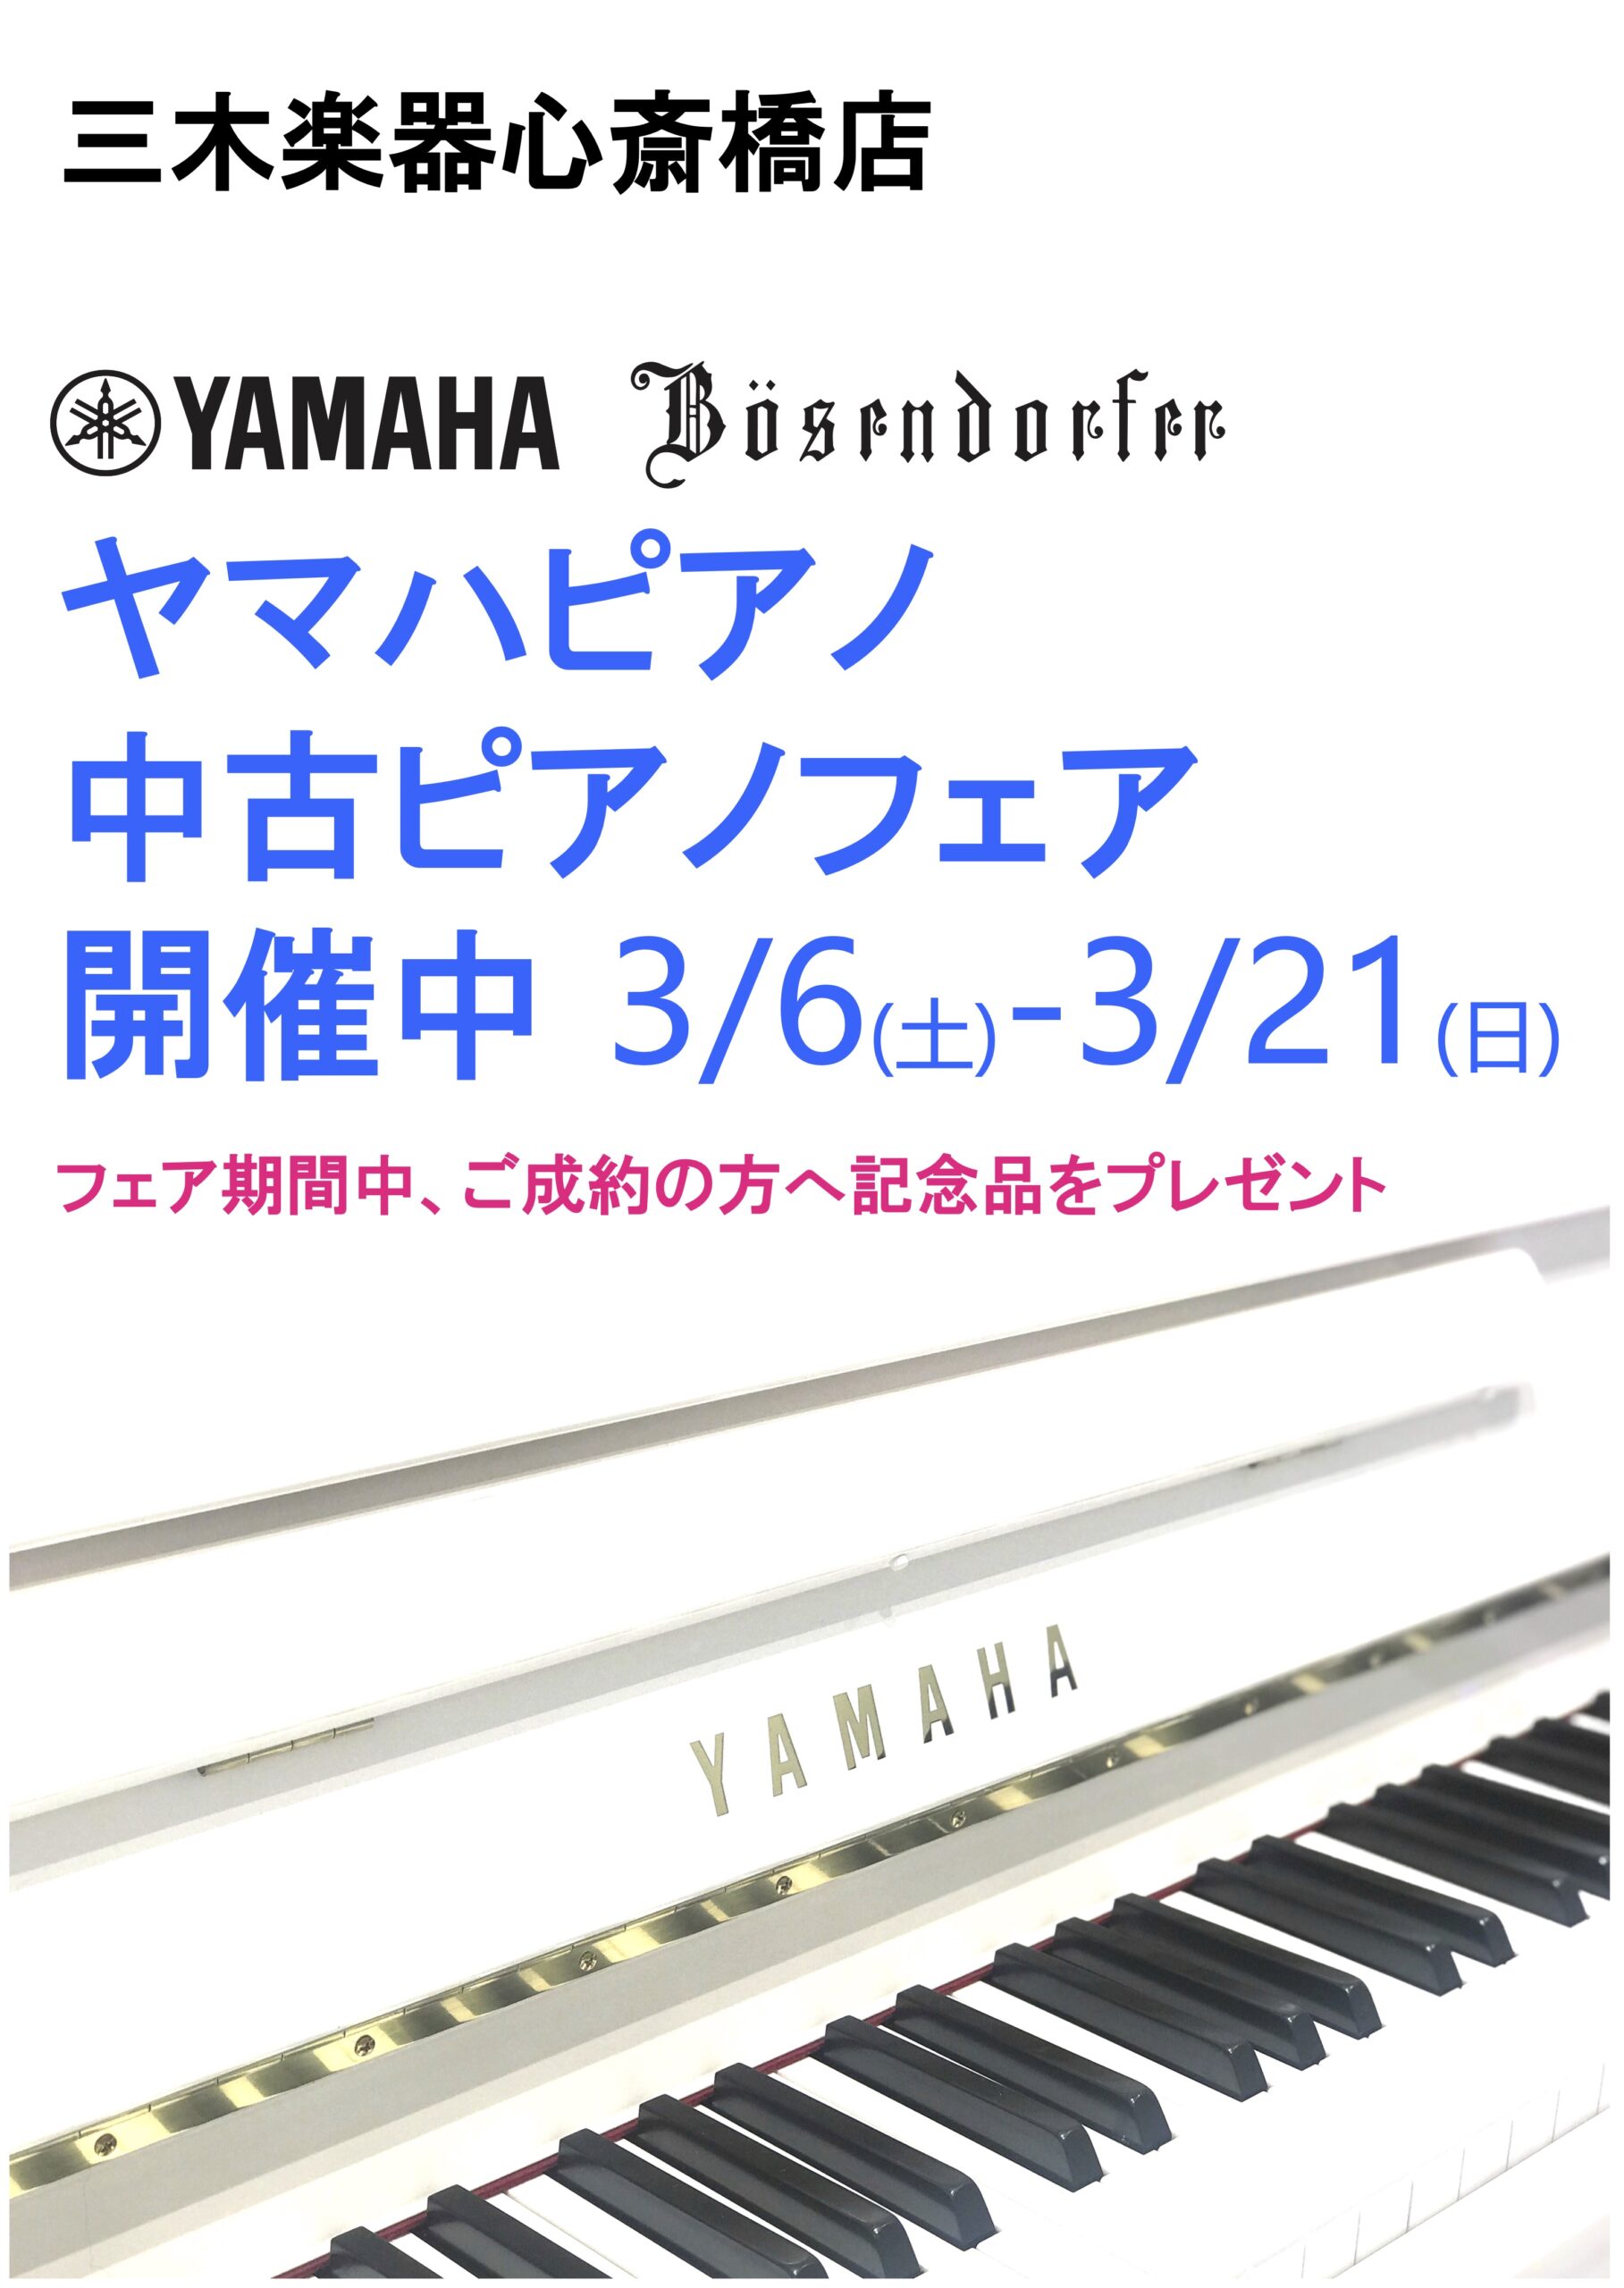 心斎橋店ヤマハピアノ 中古ピアノフェア info